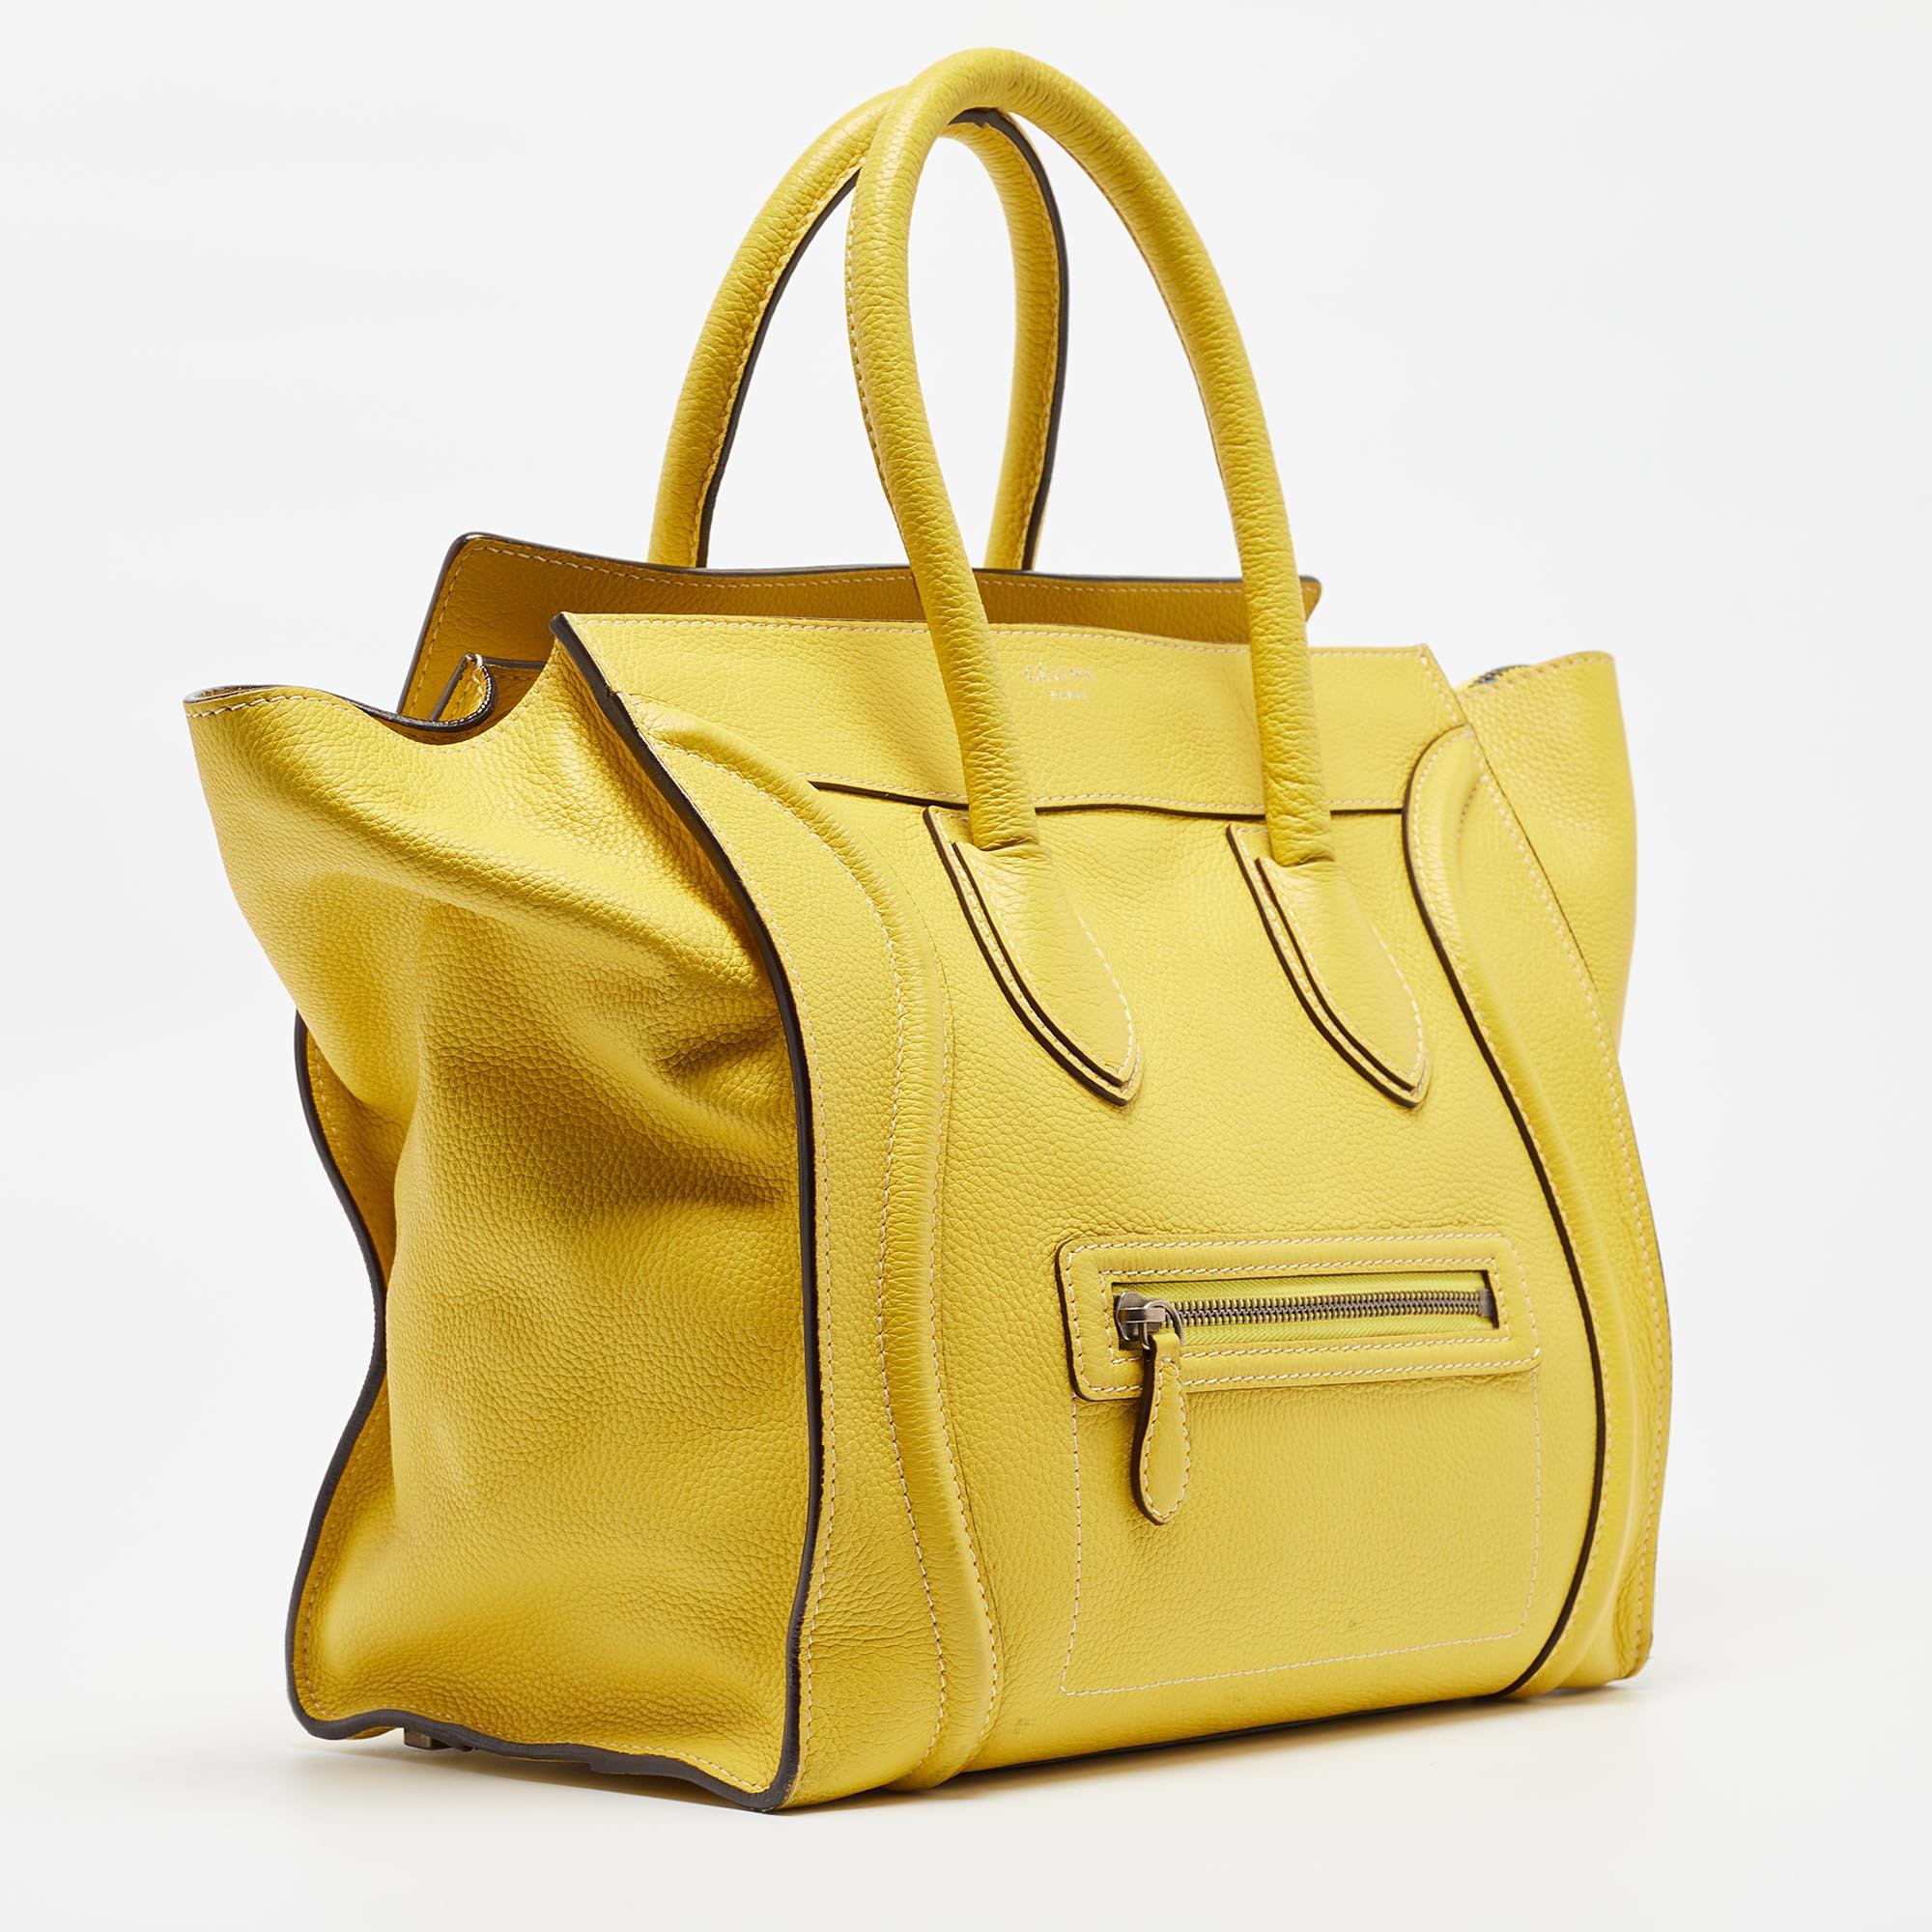 Celine Yellow Leather Mini Luggage Tote In Good Condition For Sale In Dubai, Al Qouz 2